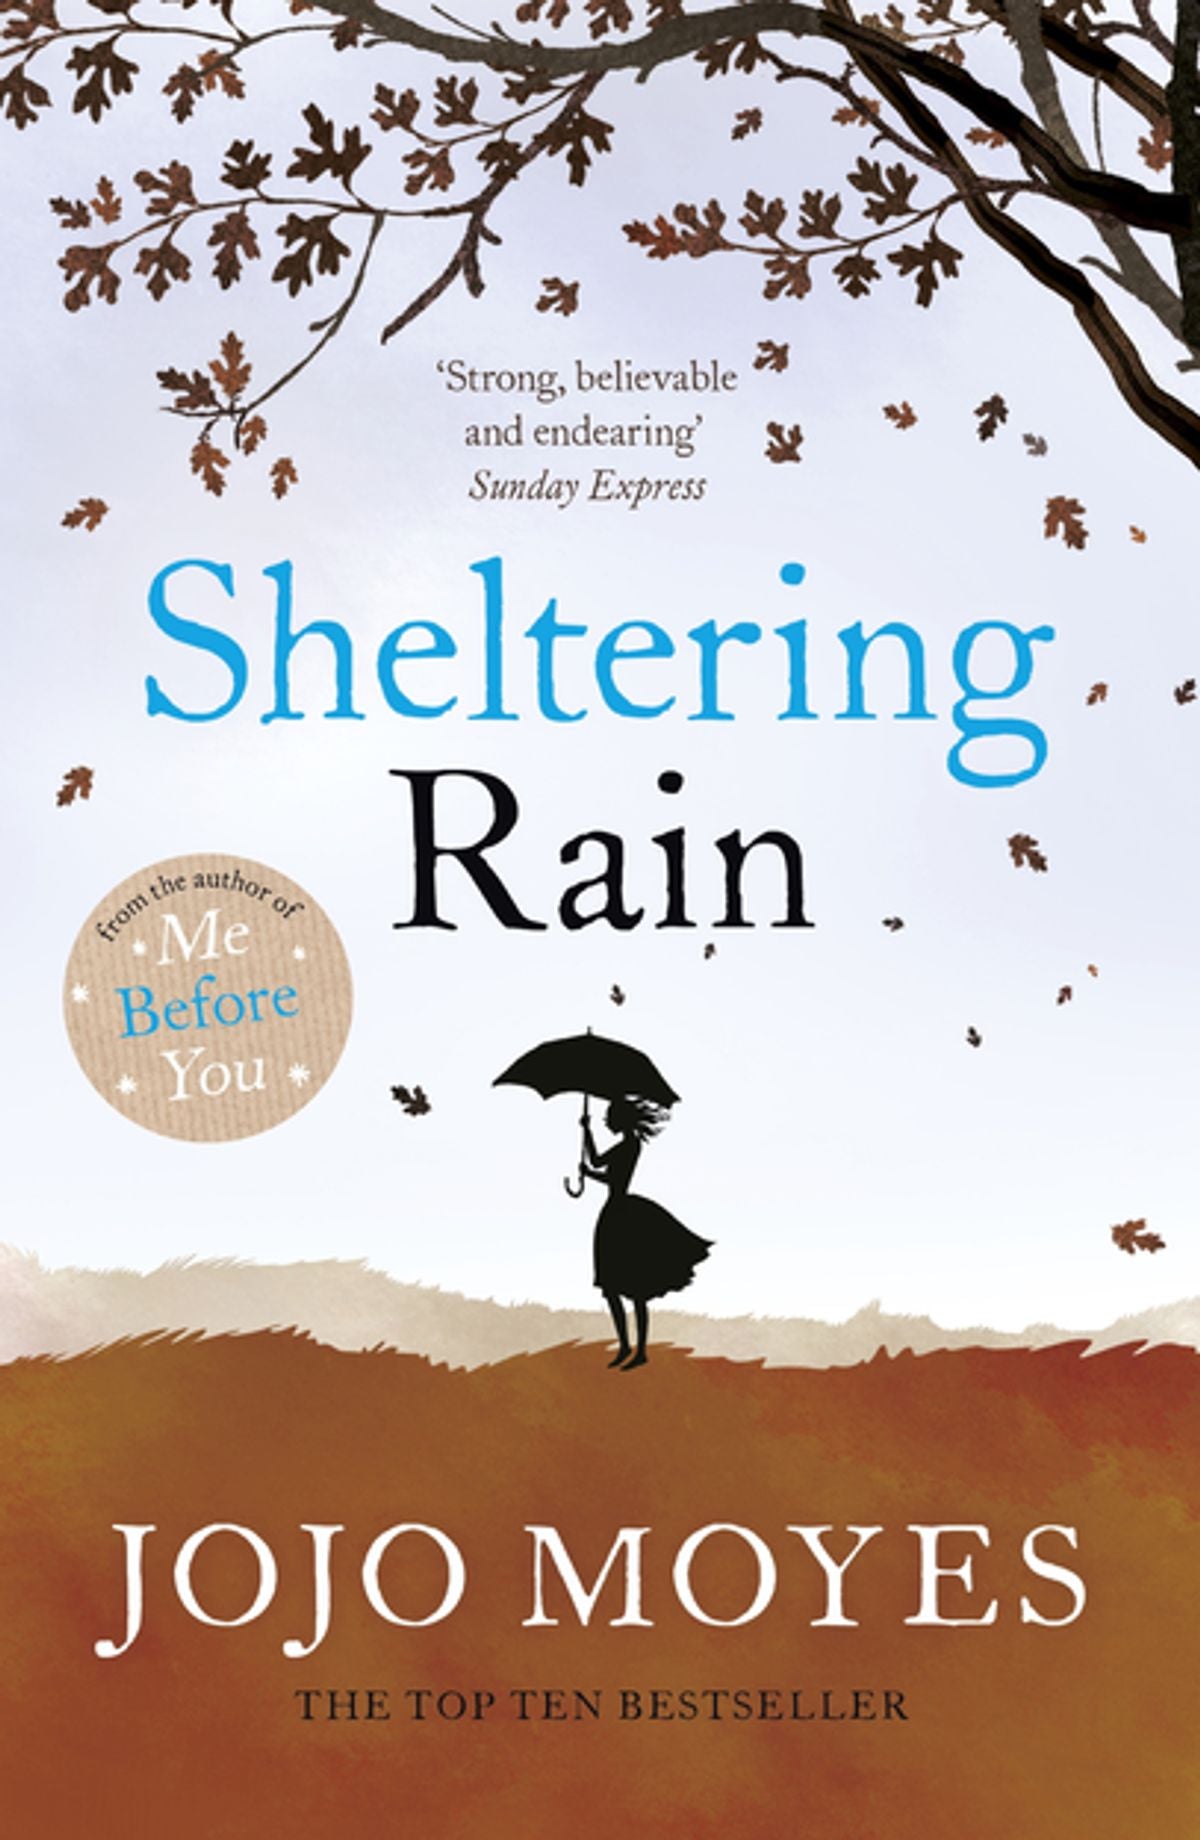 Sheltering Rain by Jojo Moyes